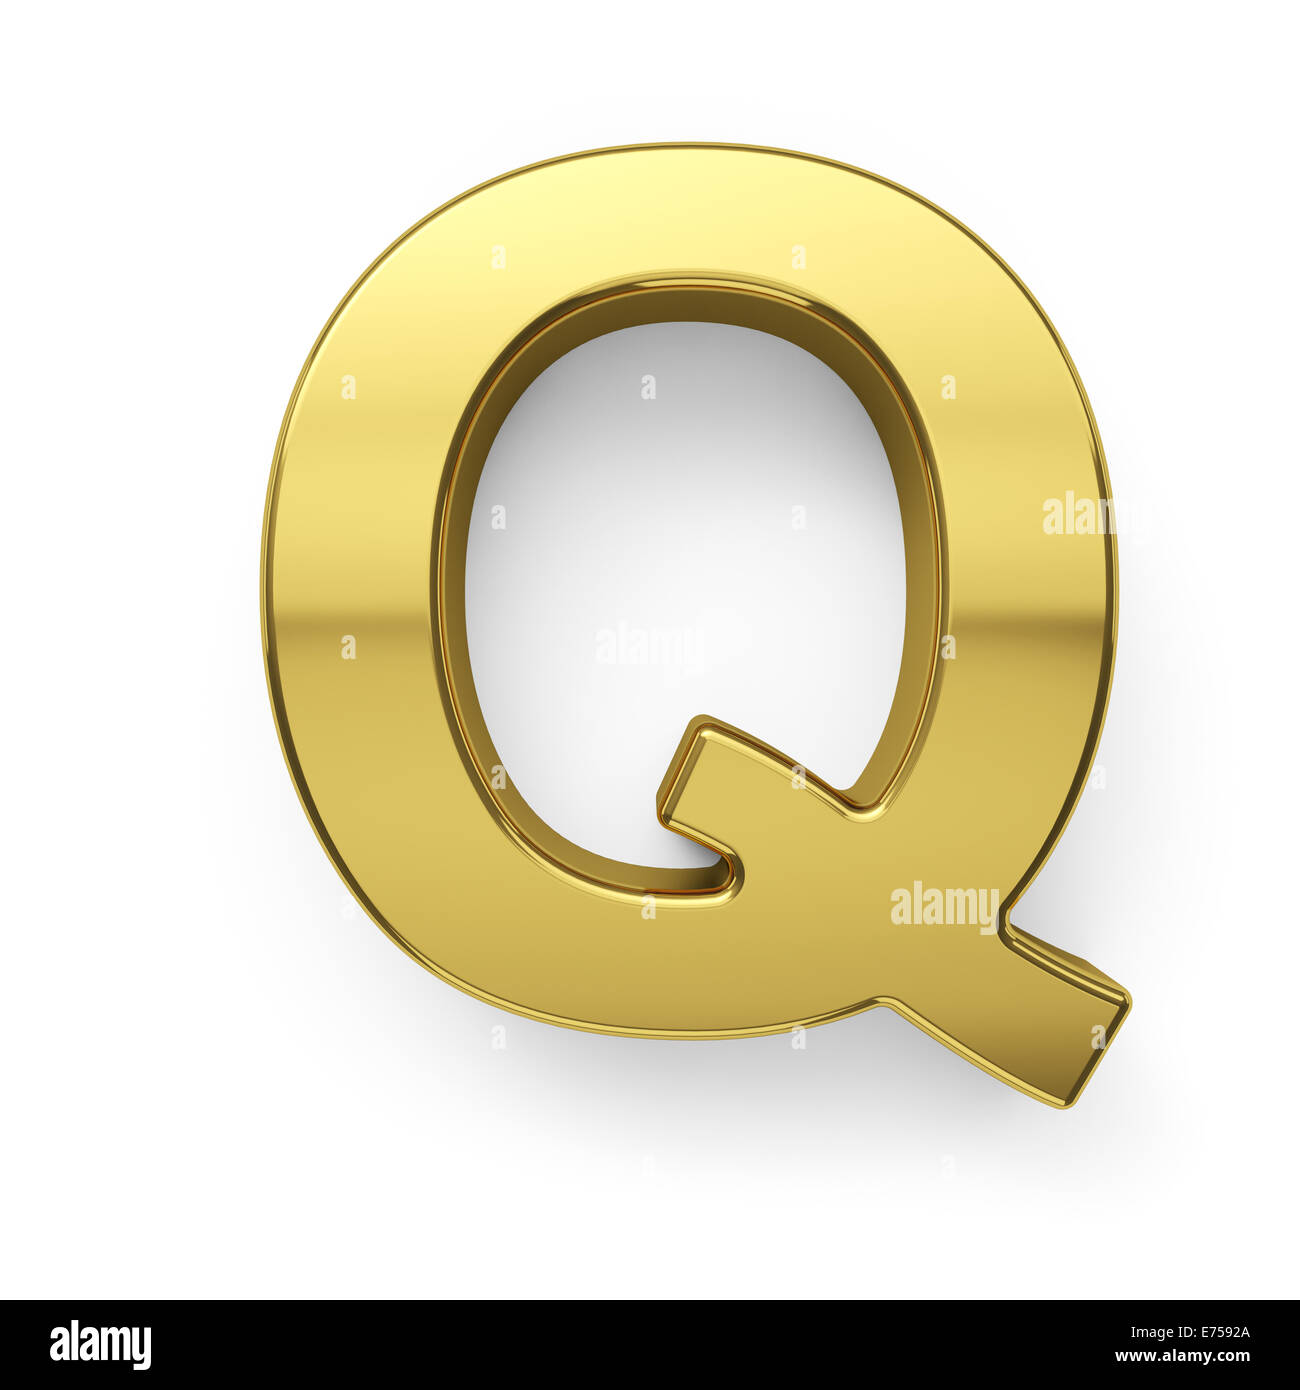 3d render of golden alphabet letter simbol - Q. Isolated on white background Stock Photo